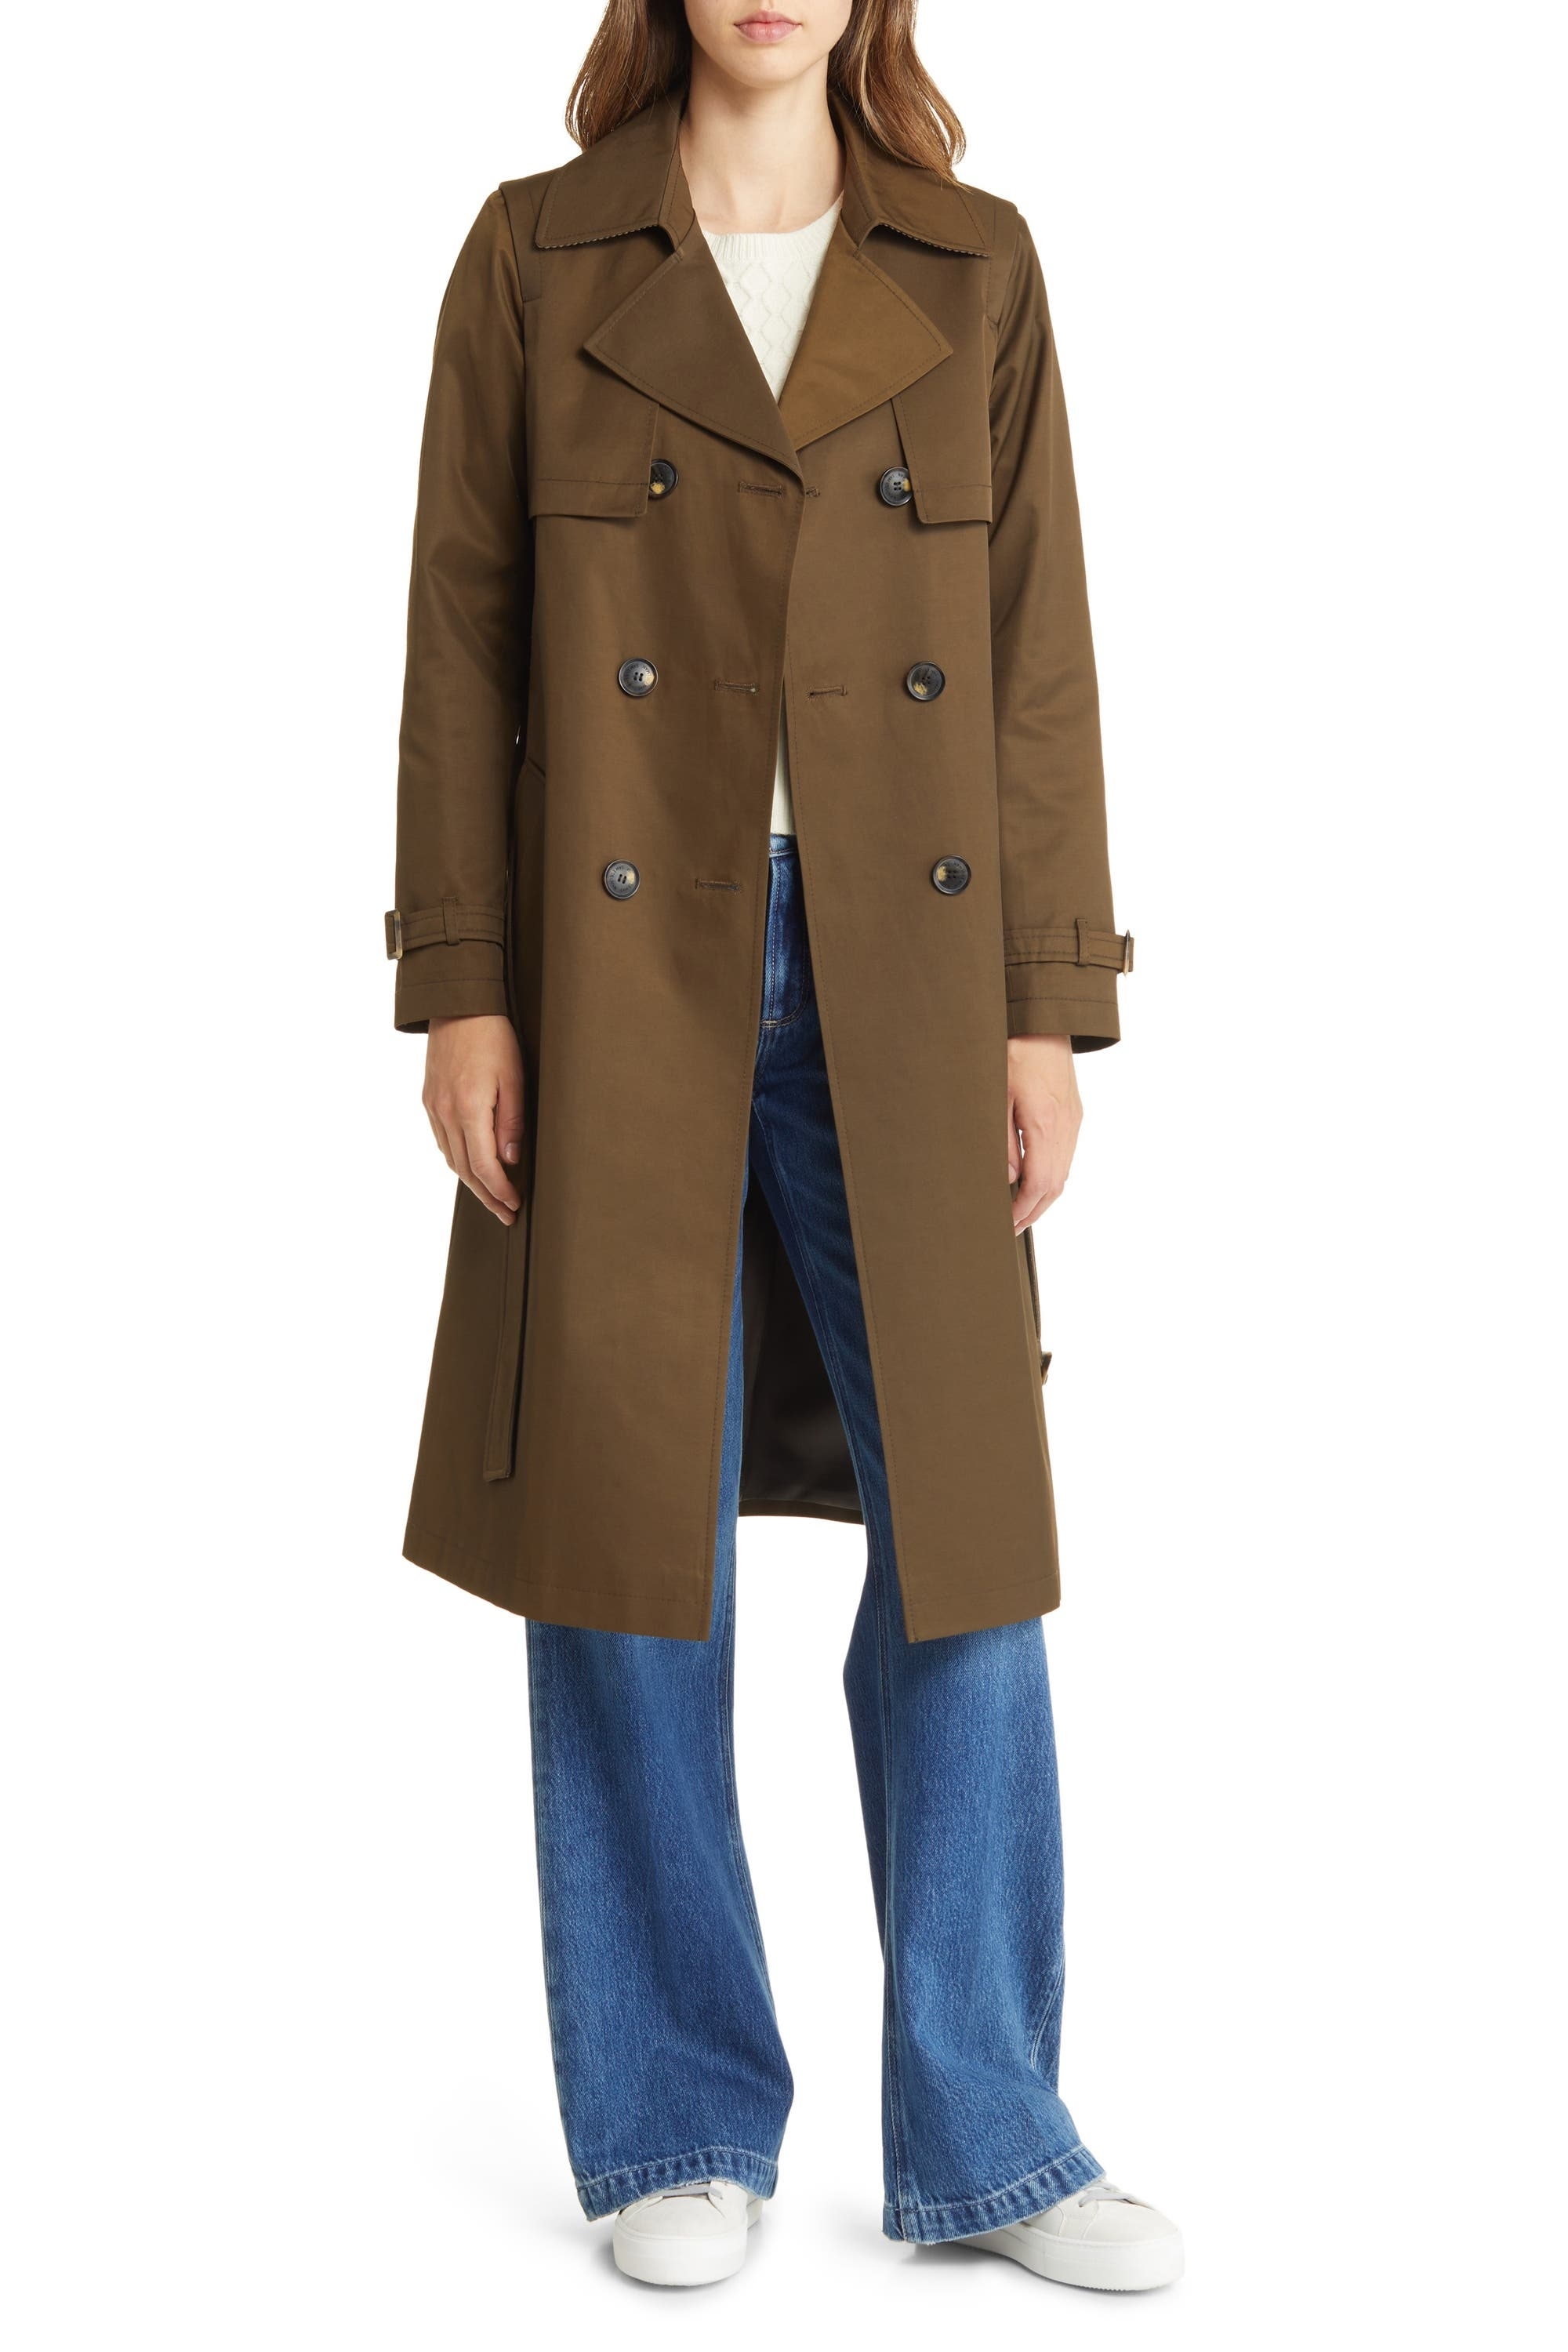 model in dark brown trench coat